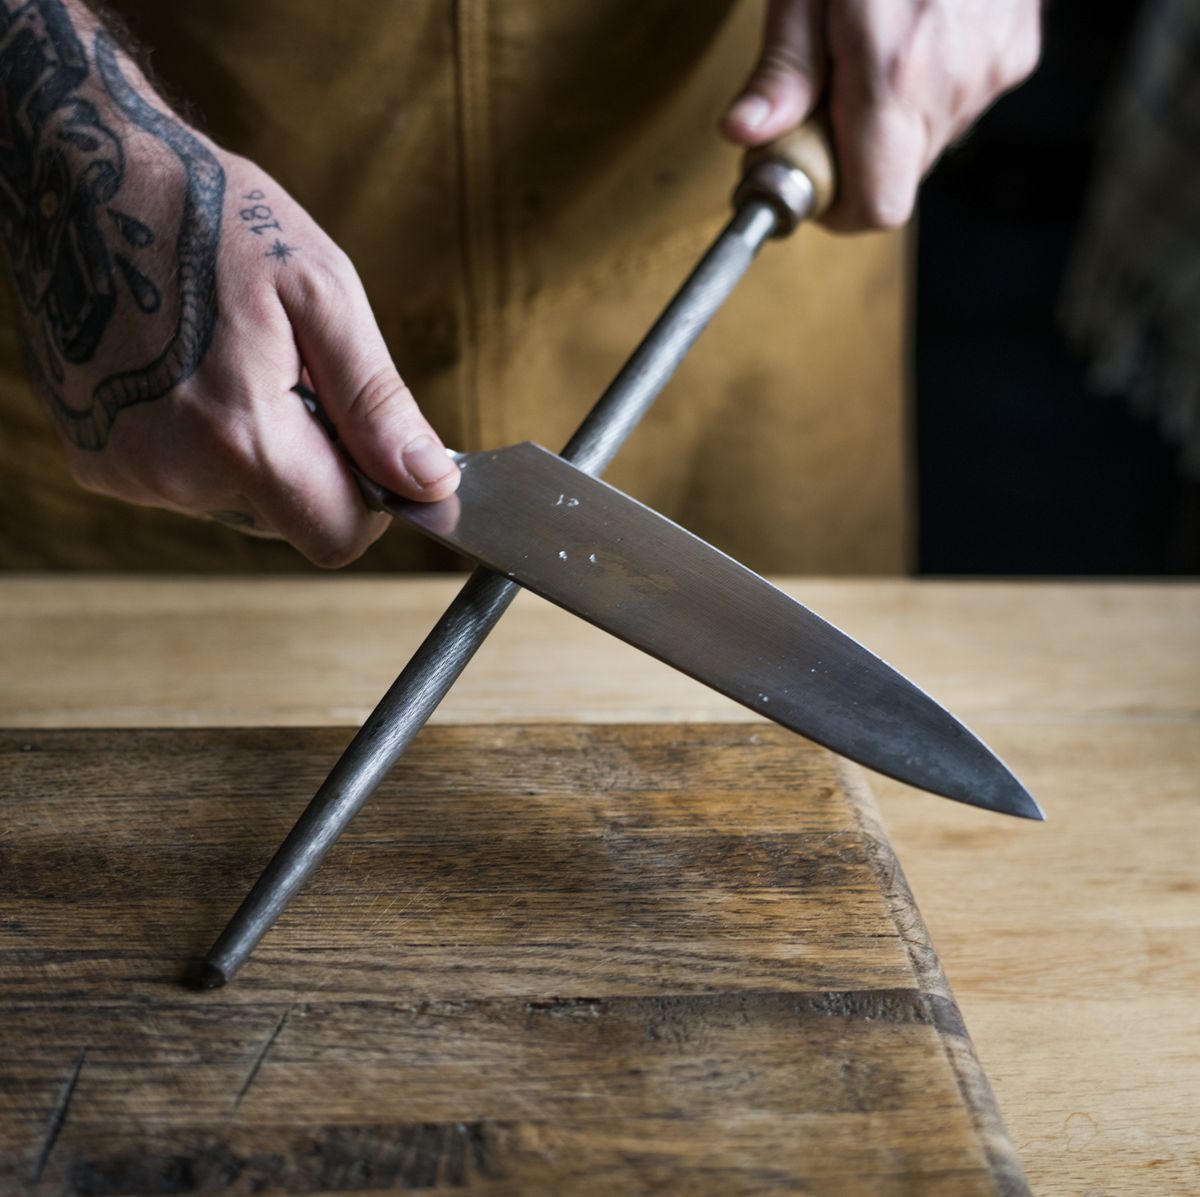 Gli errori da non fare MAI con i coltelli in cucina